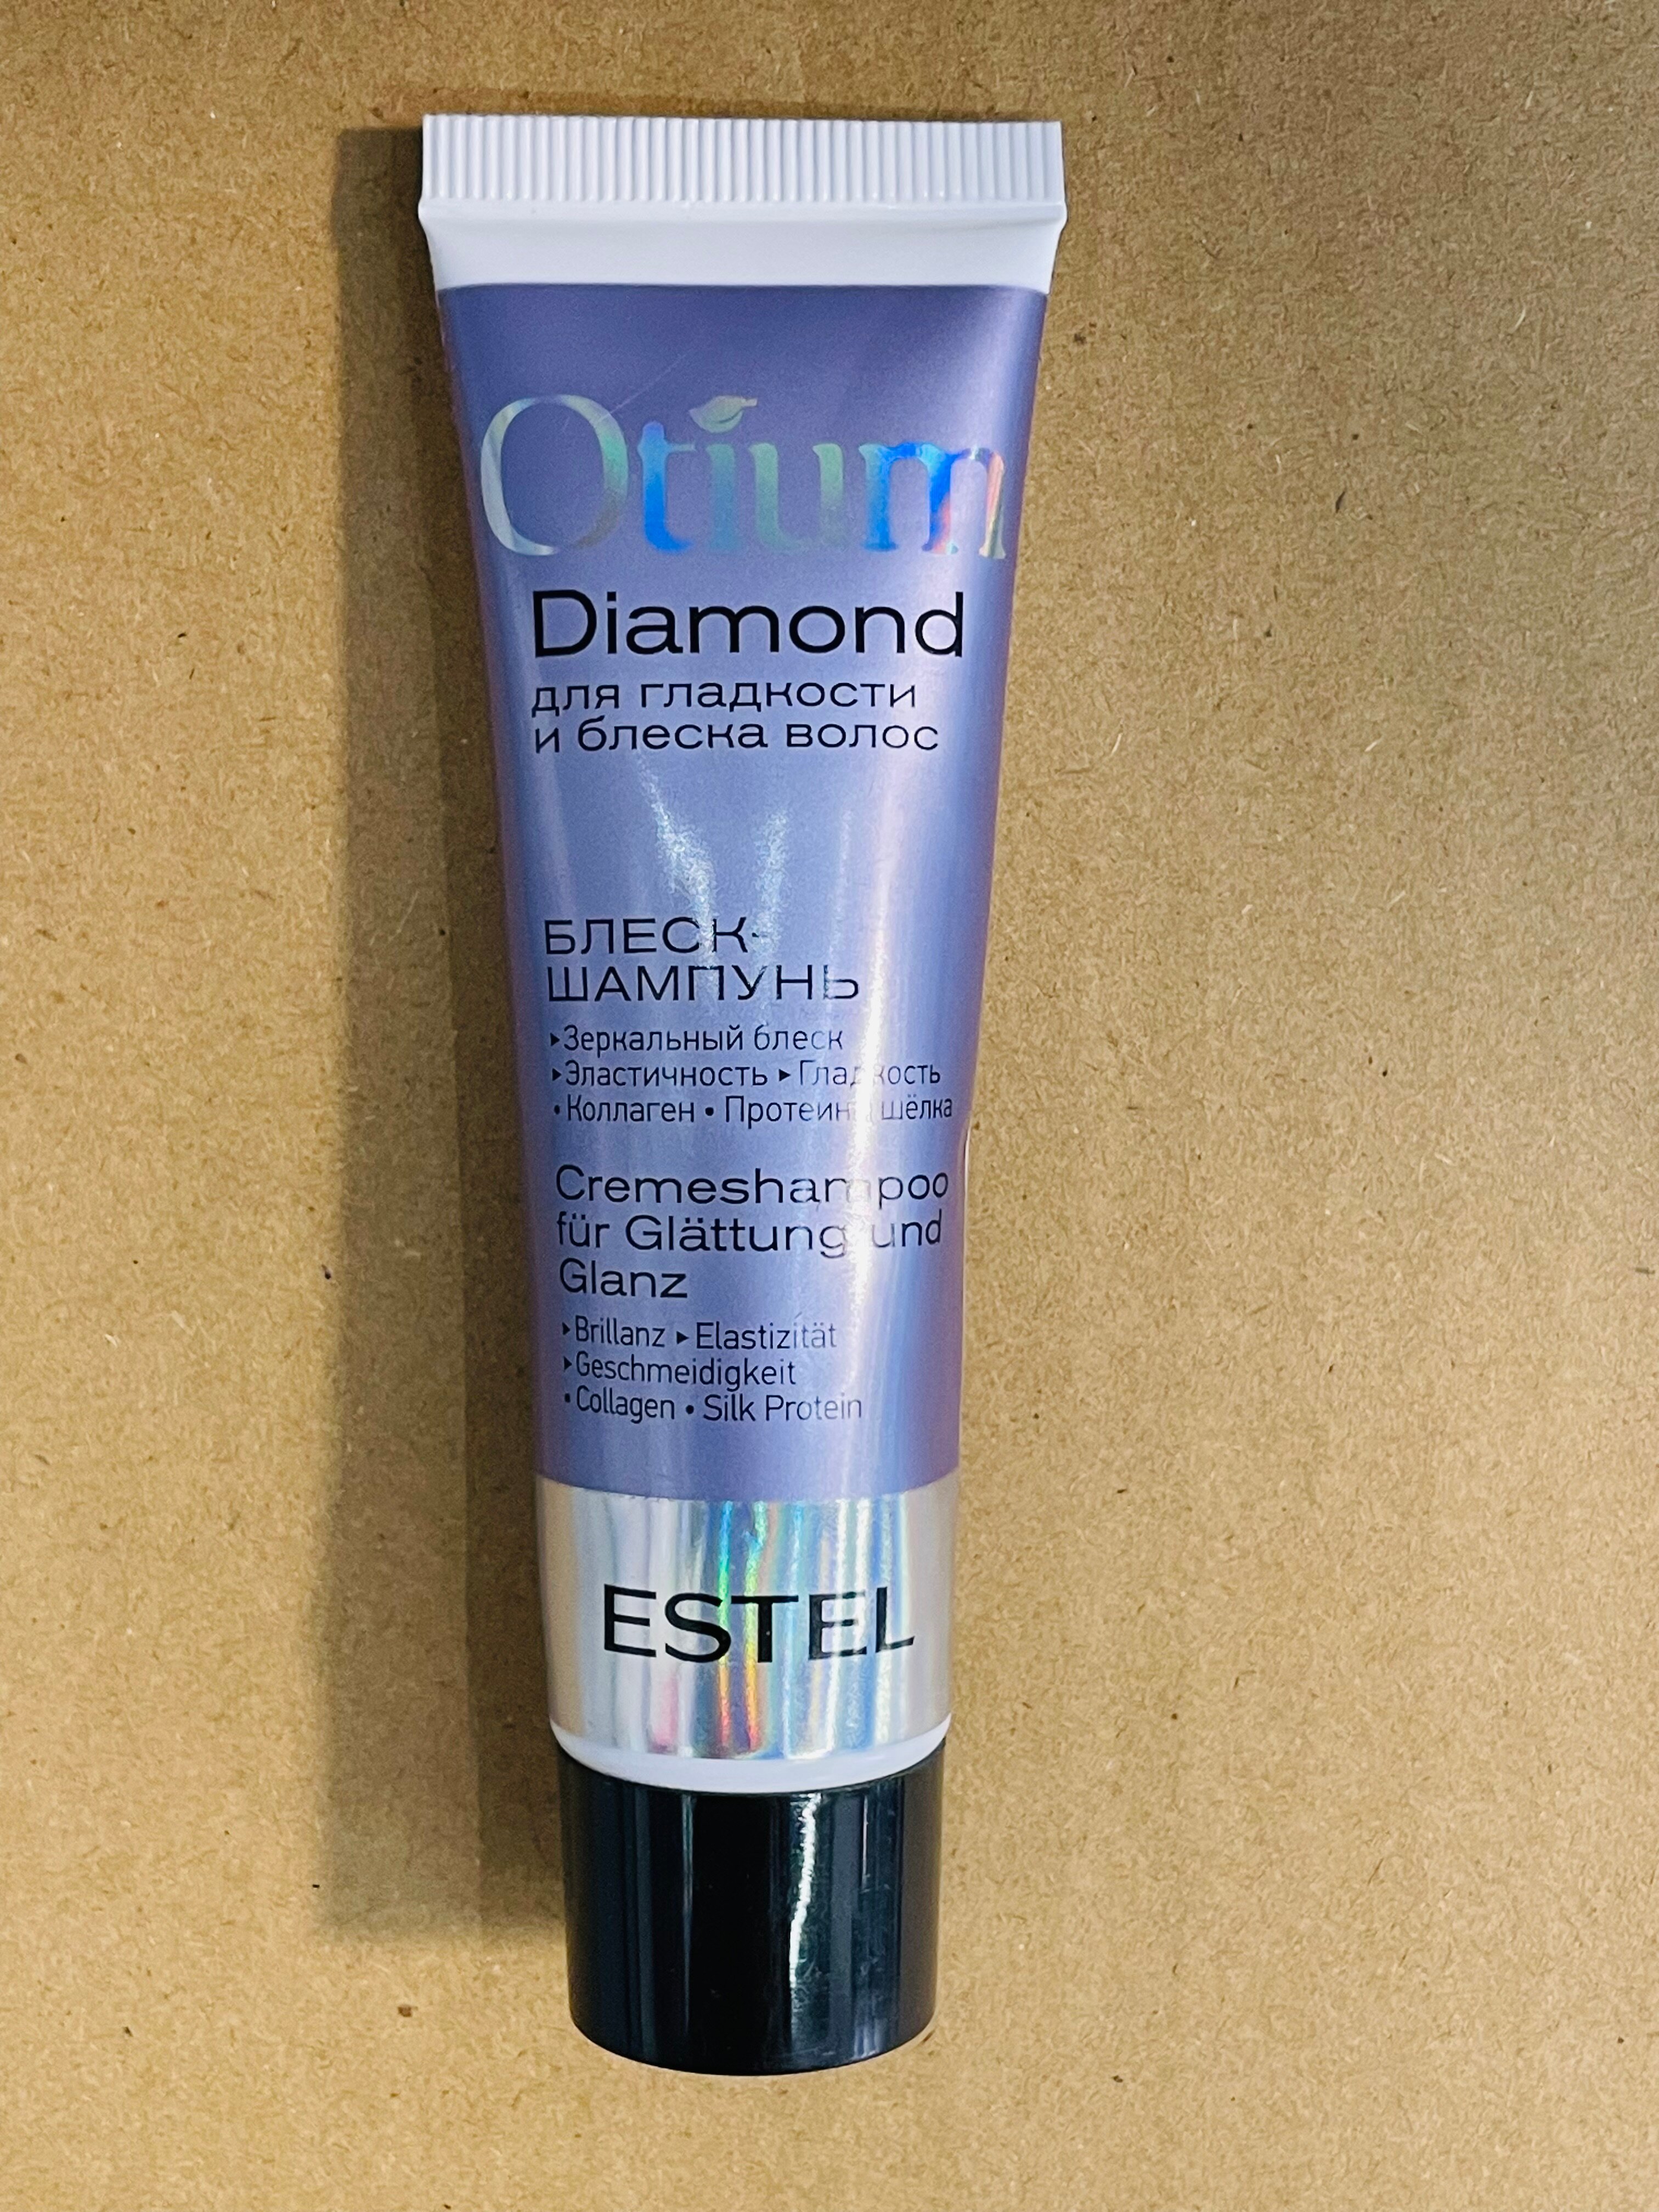 ESTEL OTIUM DIAMOND мини блеск-шампунь для гладкости И блеска волос 30МЛ